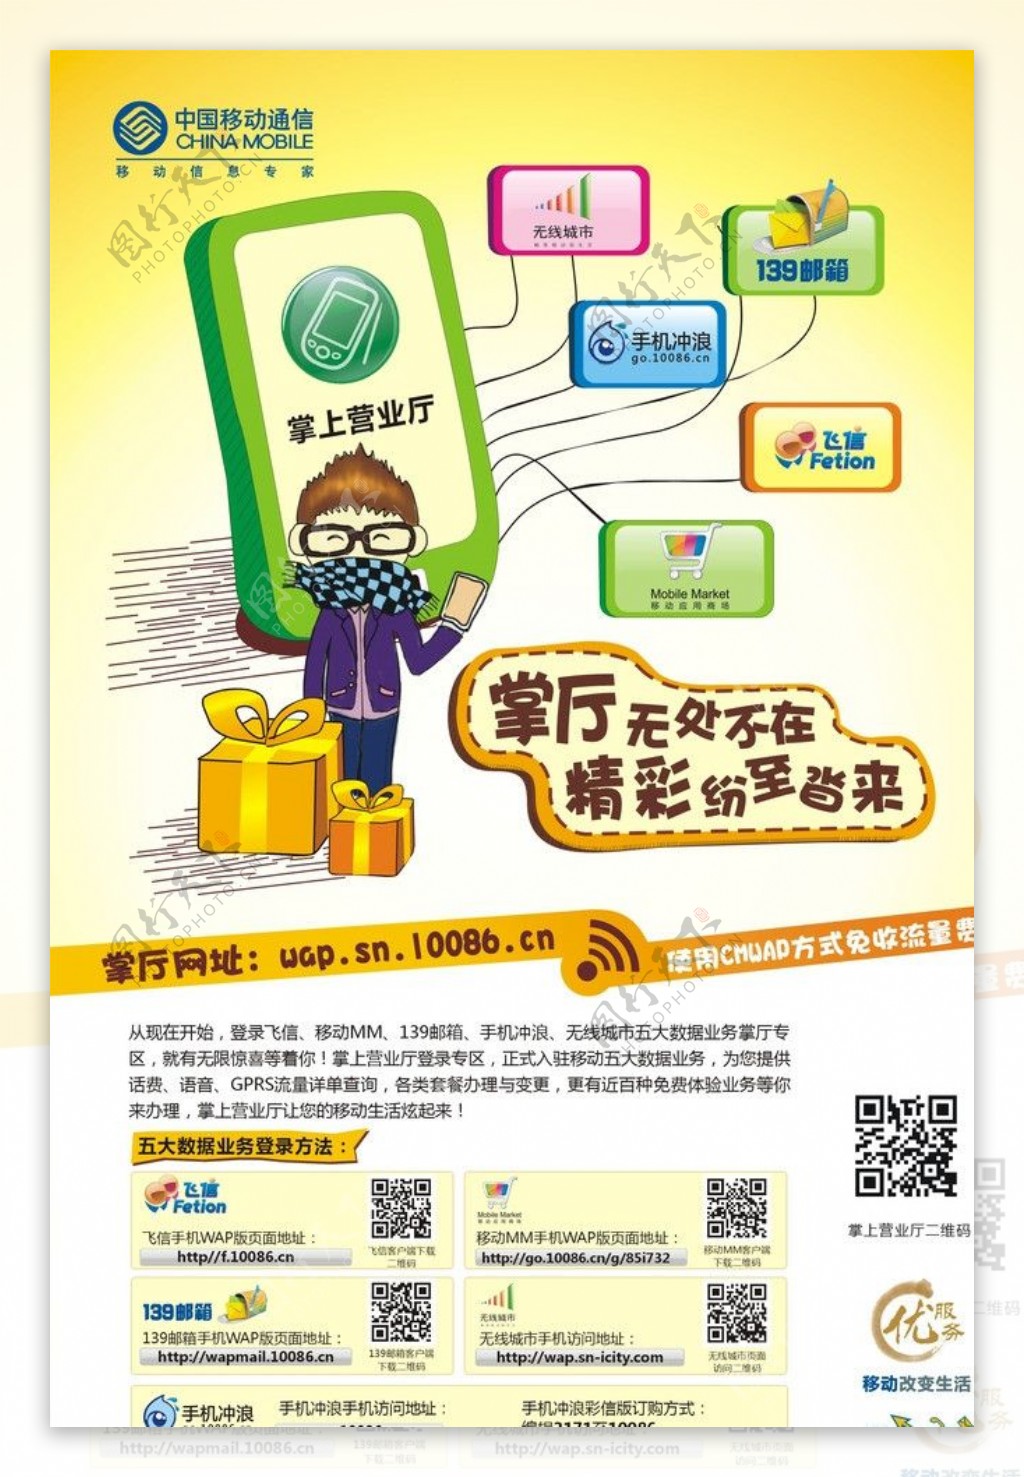 中国移动掌厅及五大业务宣传海报图片